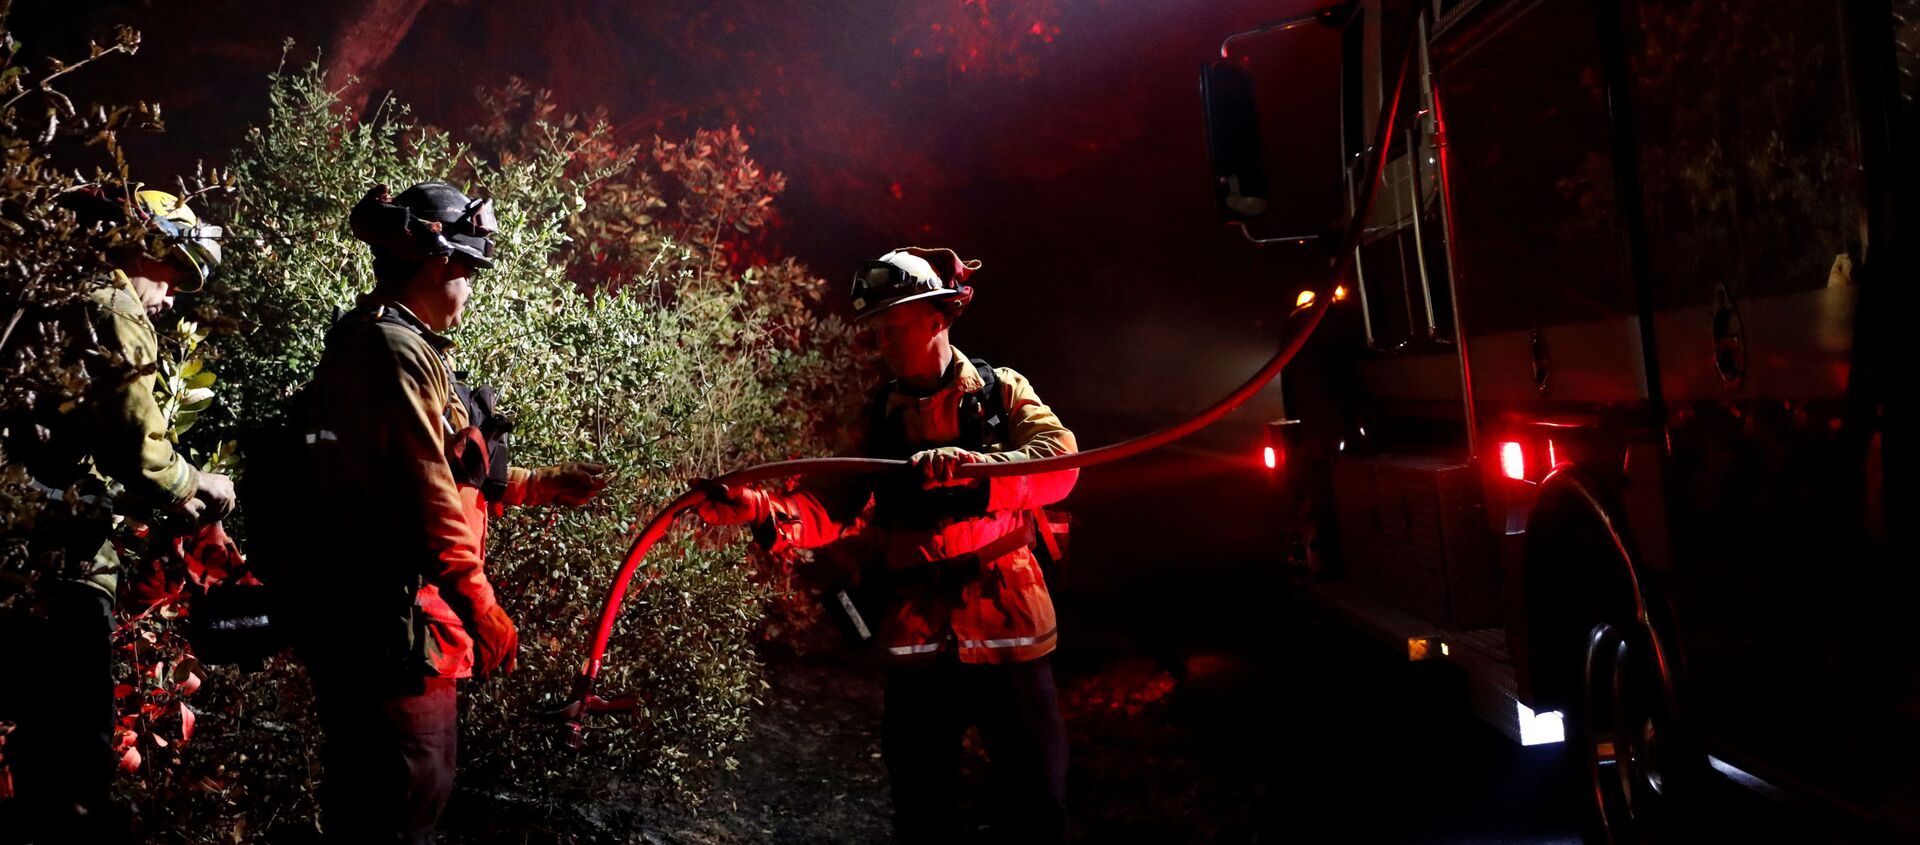 رجل إطفاء يمرر خرطوما لإخماد بقعة ساخنة أثناء حريق كينكايد في هيلدسبورغ، كاليفورنيا، الولايات المتحدة، 29 أكتوبر/تشرين الأول 2019 - سبوتنيك عربي, 1920, 27.02.2021